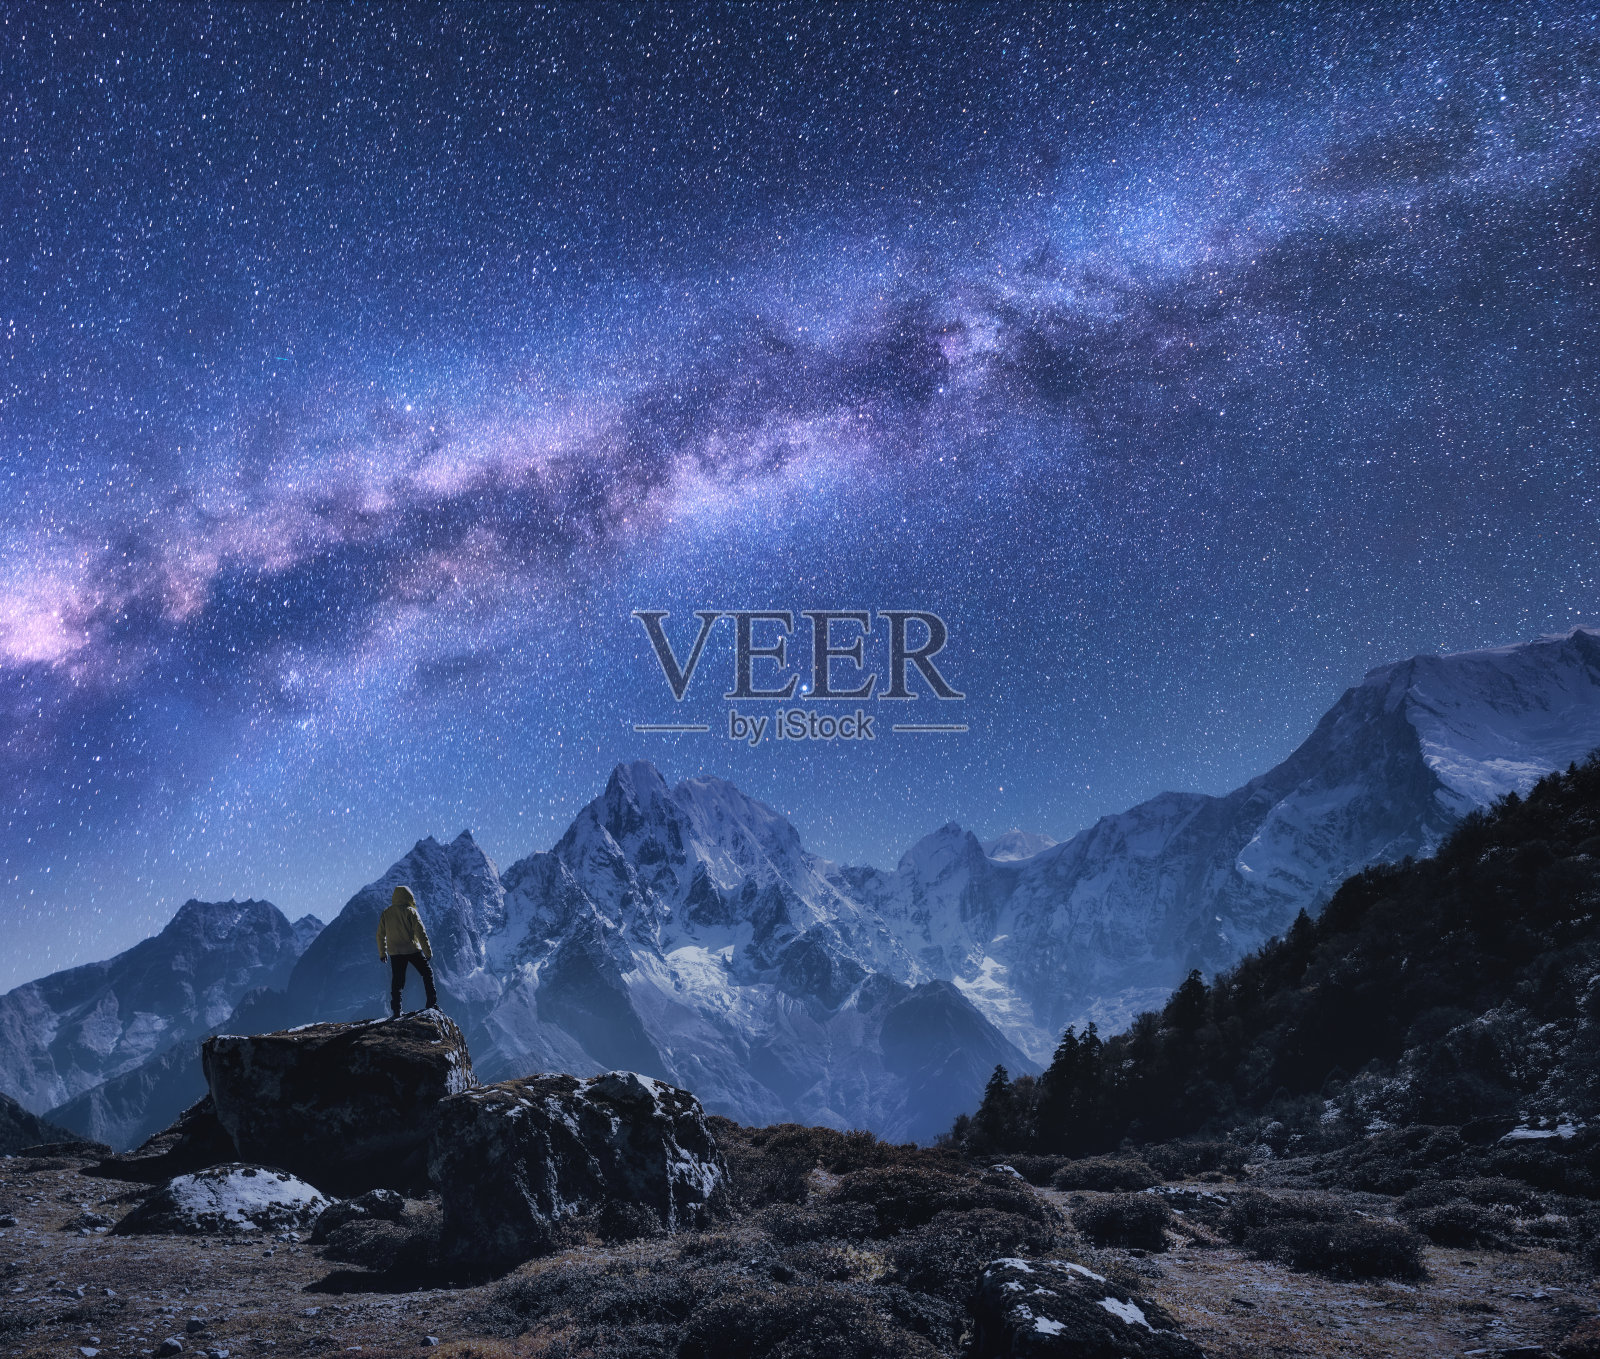 有银河和山脉的空间。在尼泊尔的夜晚，站在石头上、山上、星空上的人。白雪皑皑的山峰映衬着满天繁星。徒步旅行。夜景与明亮的银河照片摄影图片